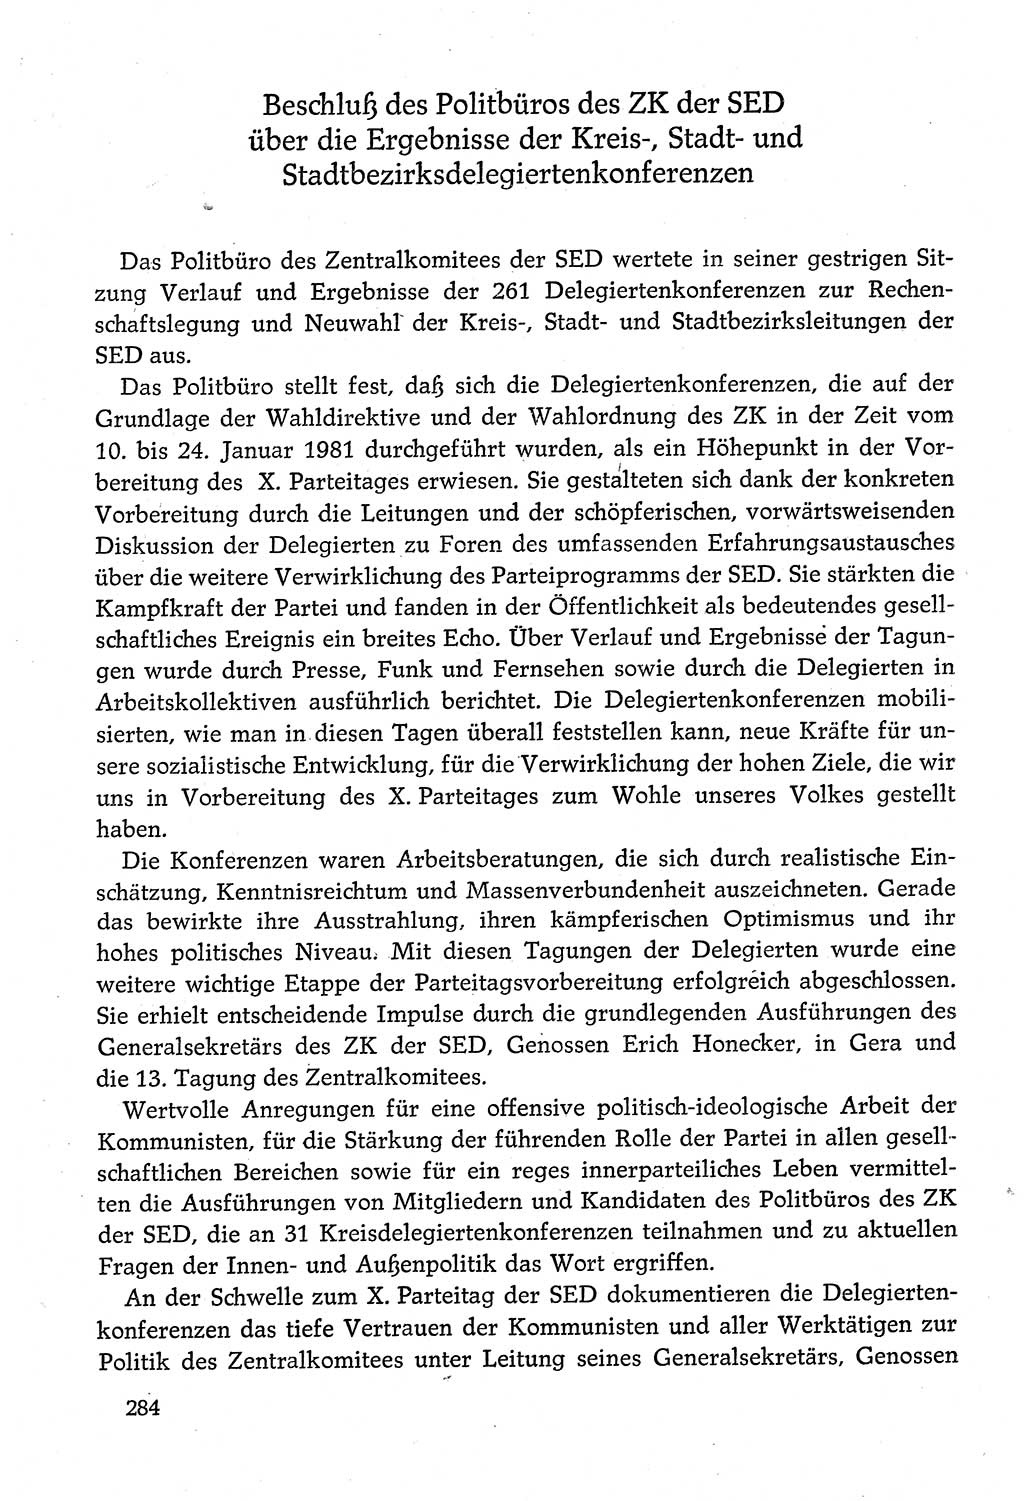 Dokumente der Sozialistischen Einheitspartei Deutschlands (SED) [Deutsche Demokratische Republik (DDR)] 1980-1981, Seite 284 (Dok. SED DDR 1980-1981, S. 284)